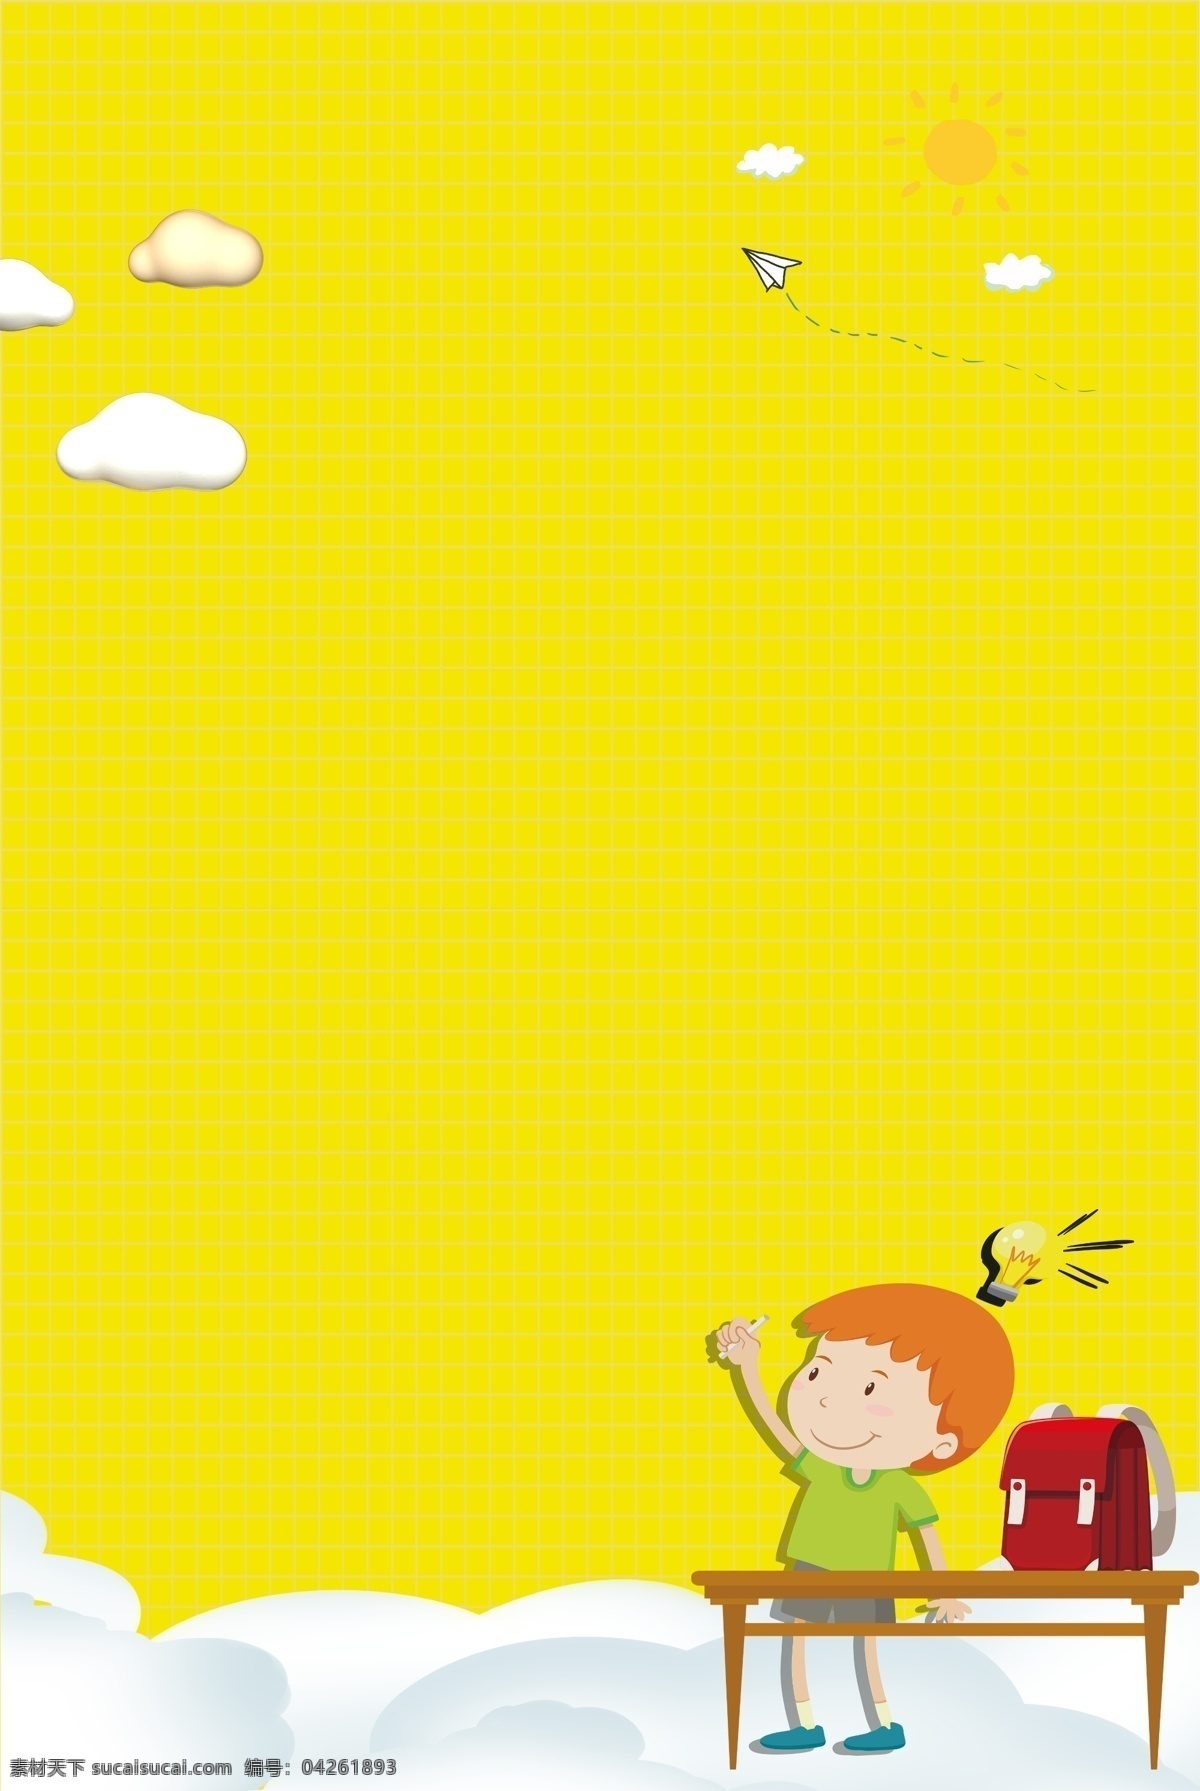 暑假 少儿 艺术 班 招生 海报 背景 模板 少儿艺术班 招生海报 背景模板 黄色 卡通背景 孩童 书籍 气球 云朵 暑假辅导班